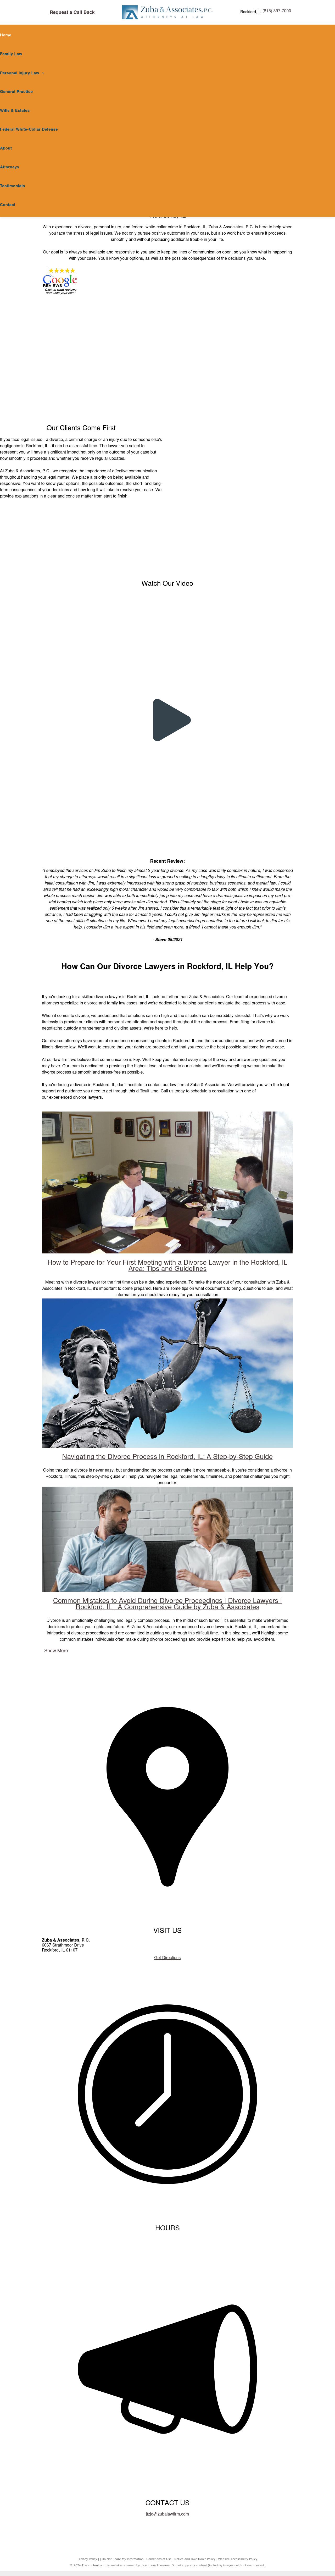 Zuba & Associates - Rockford IL Lawyers